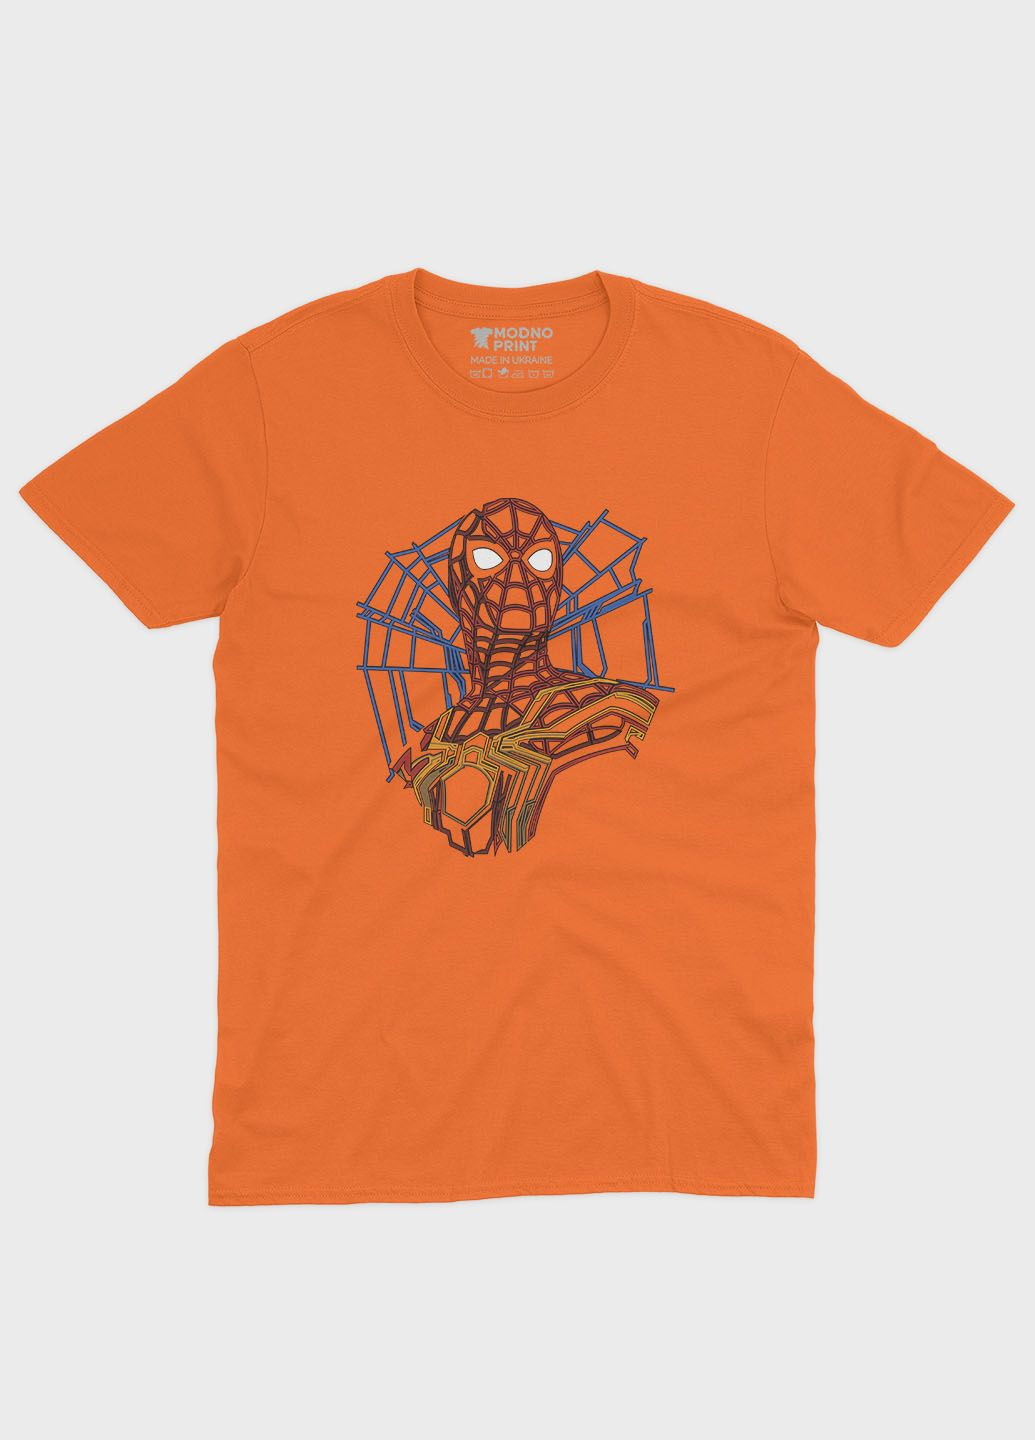 Помаранчева демісезонна футболка для хлопчика з принтом супергероя - людина-павук (ts001-1-ora-006-014-007-b) Modno